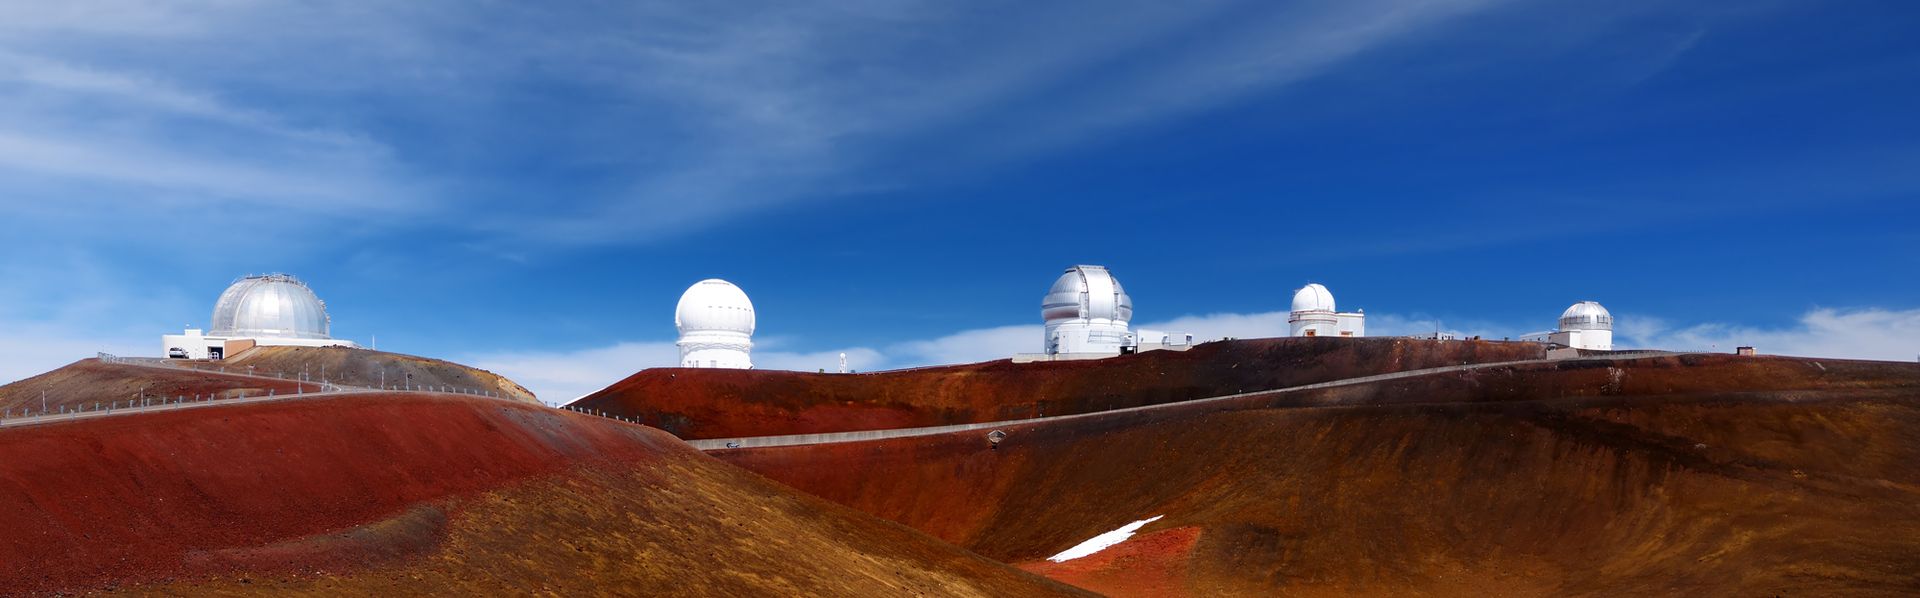 Les observatoires de Mauna Kea, à Hawaii. [MNStudio - Fotolia]